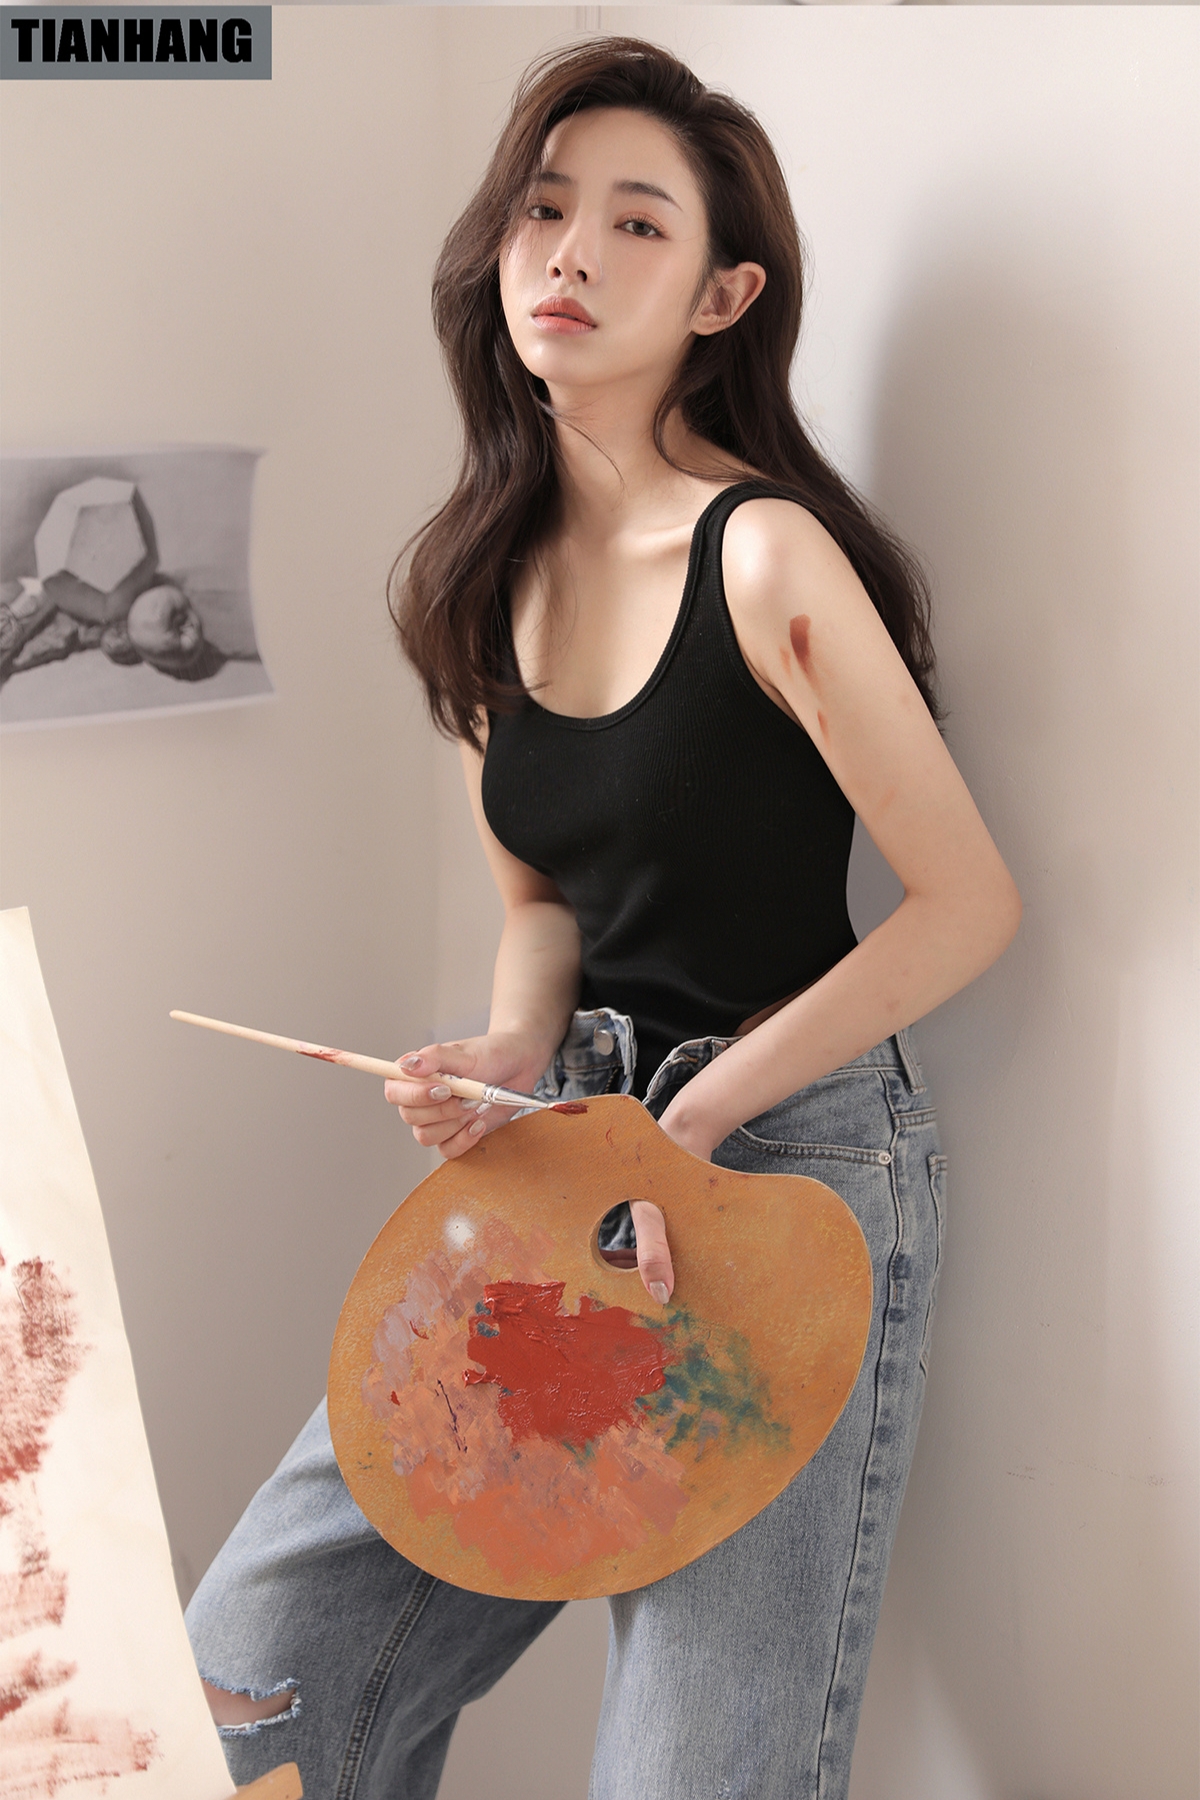 Actor Indoor Drawing Celebrity Photo Album Asian Tian Hang 1200x1800